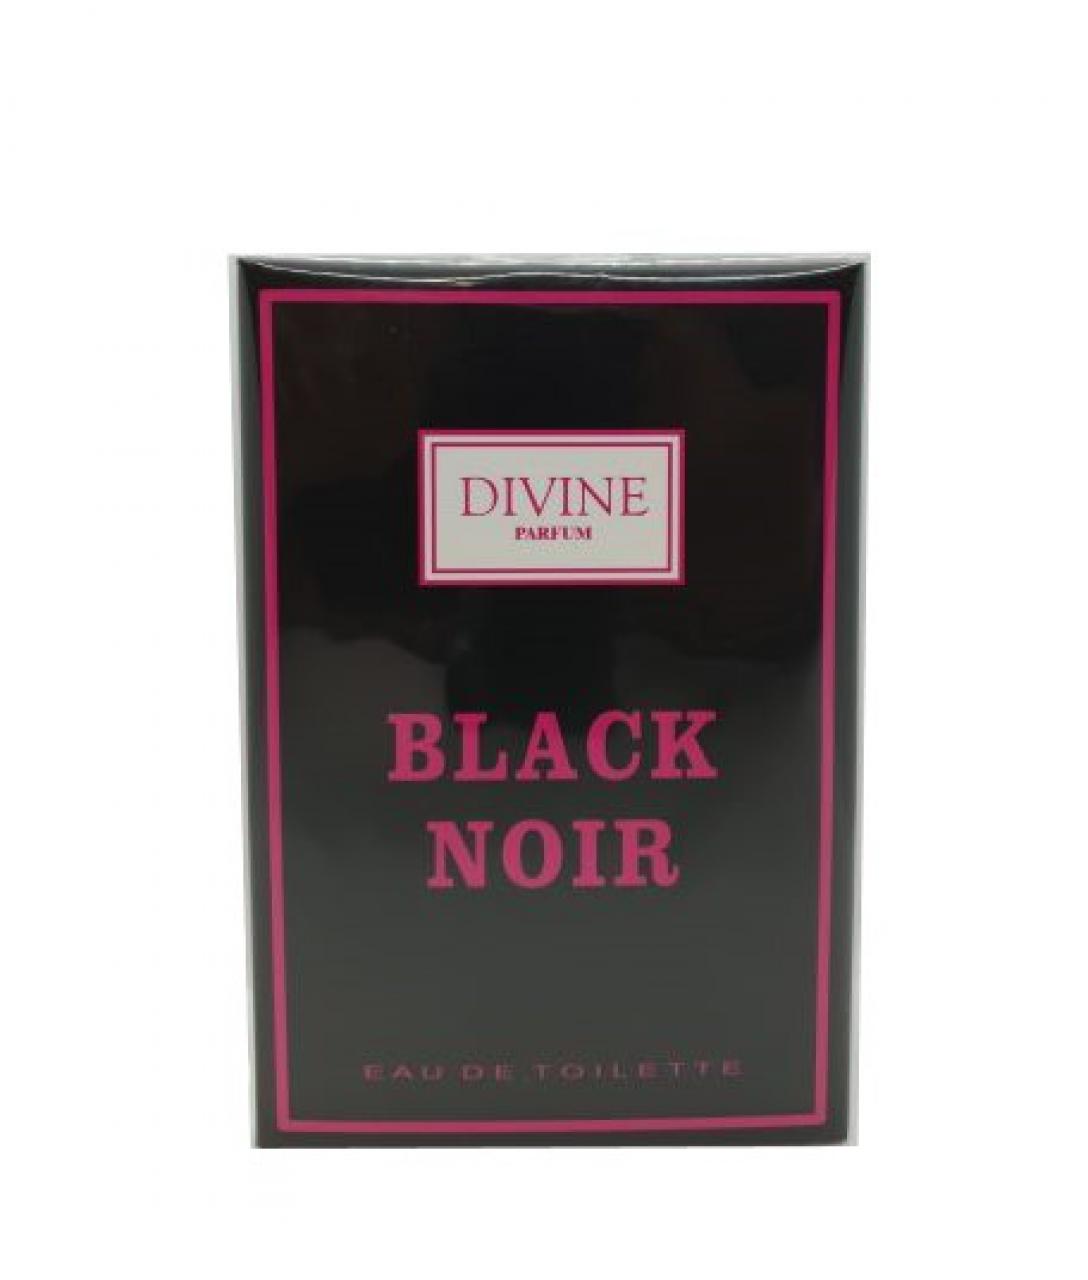 DIVINE PARFUM – BLACK NOIR